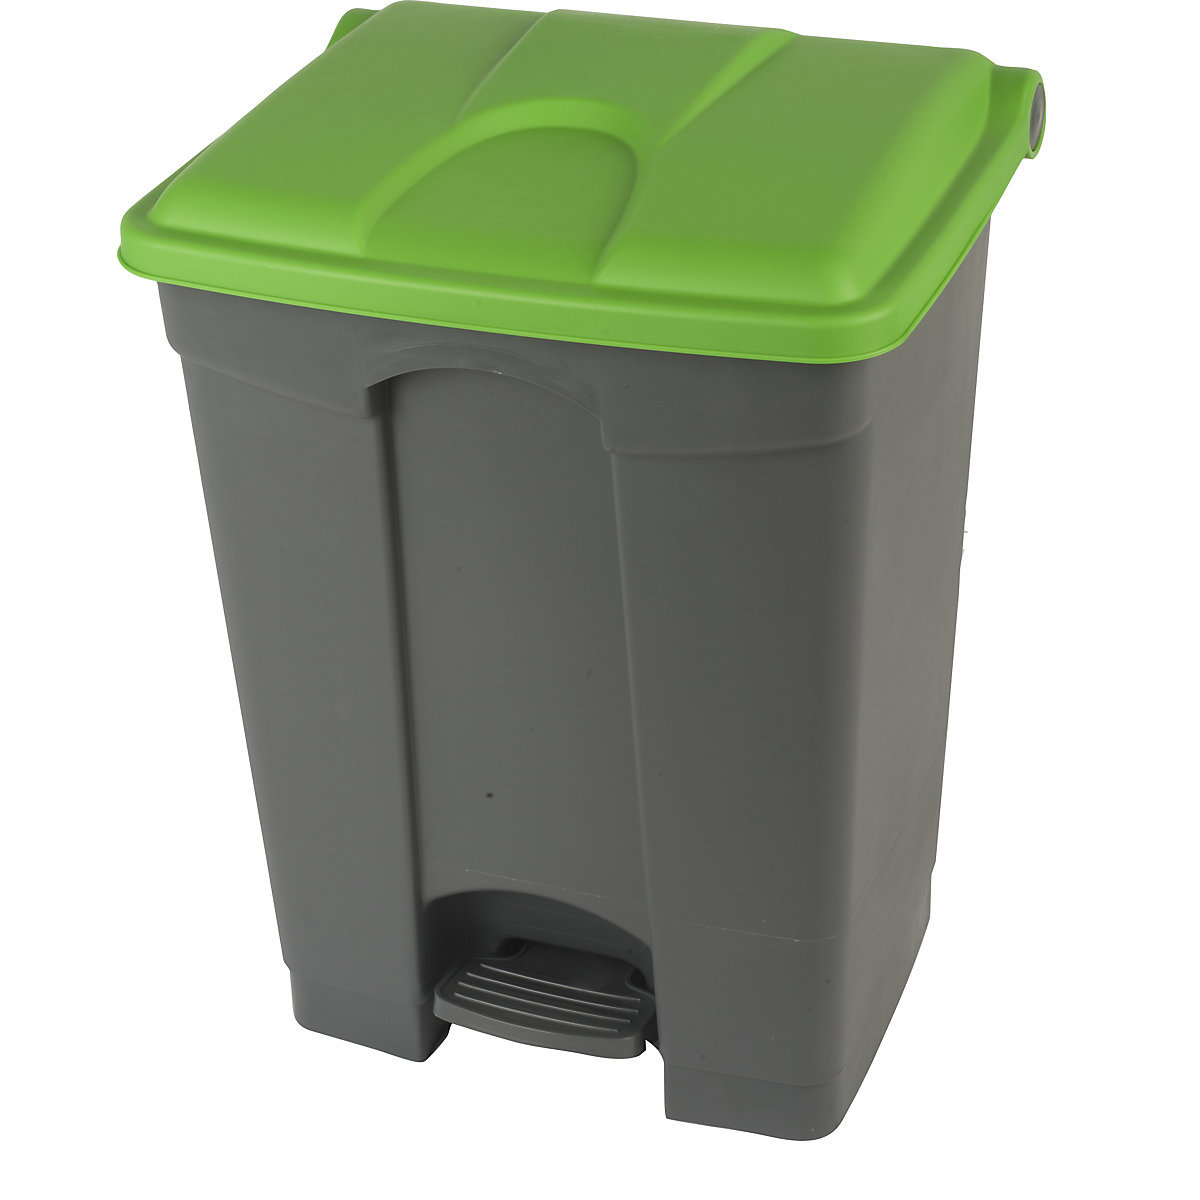 Spremnik za otpad s papučicom, volumen 70 l, ŠxVxD 505 x 675 x 415 mm, u sivoj boji, poklopac u zelenoj boji-10